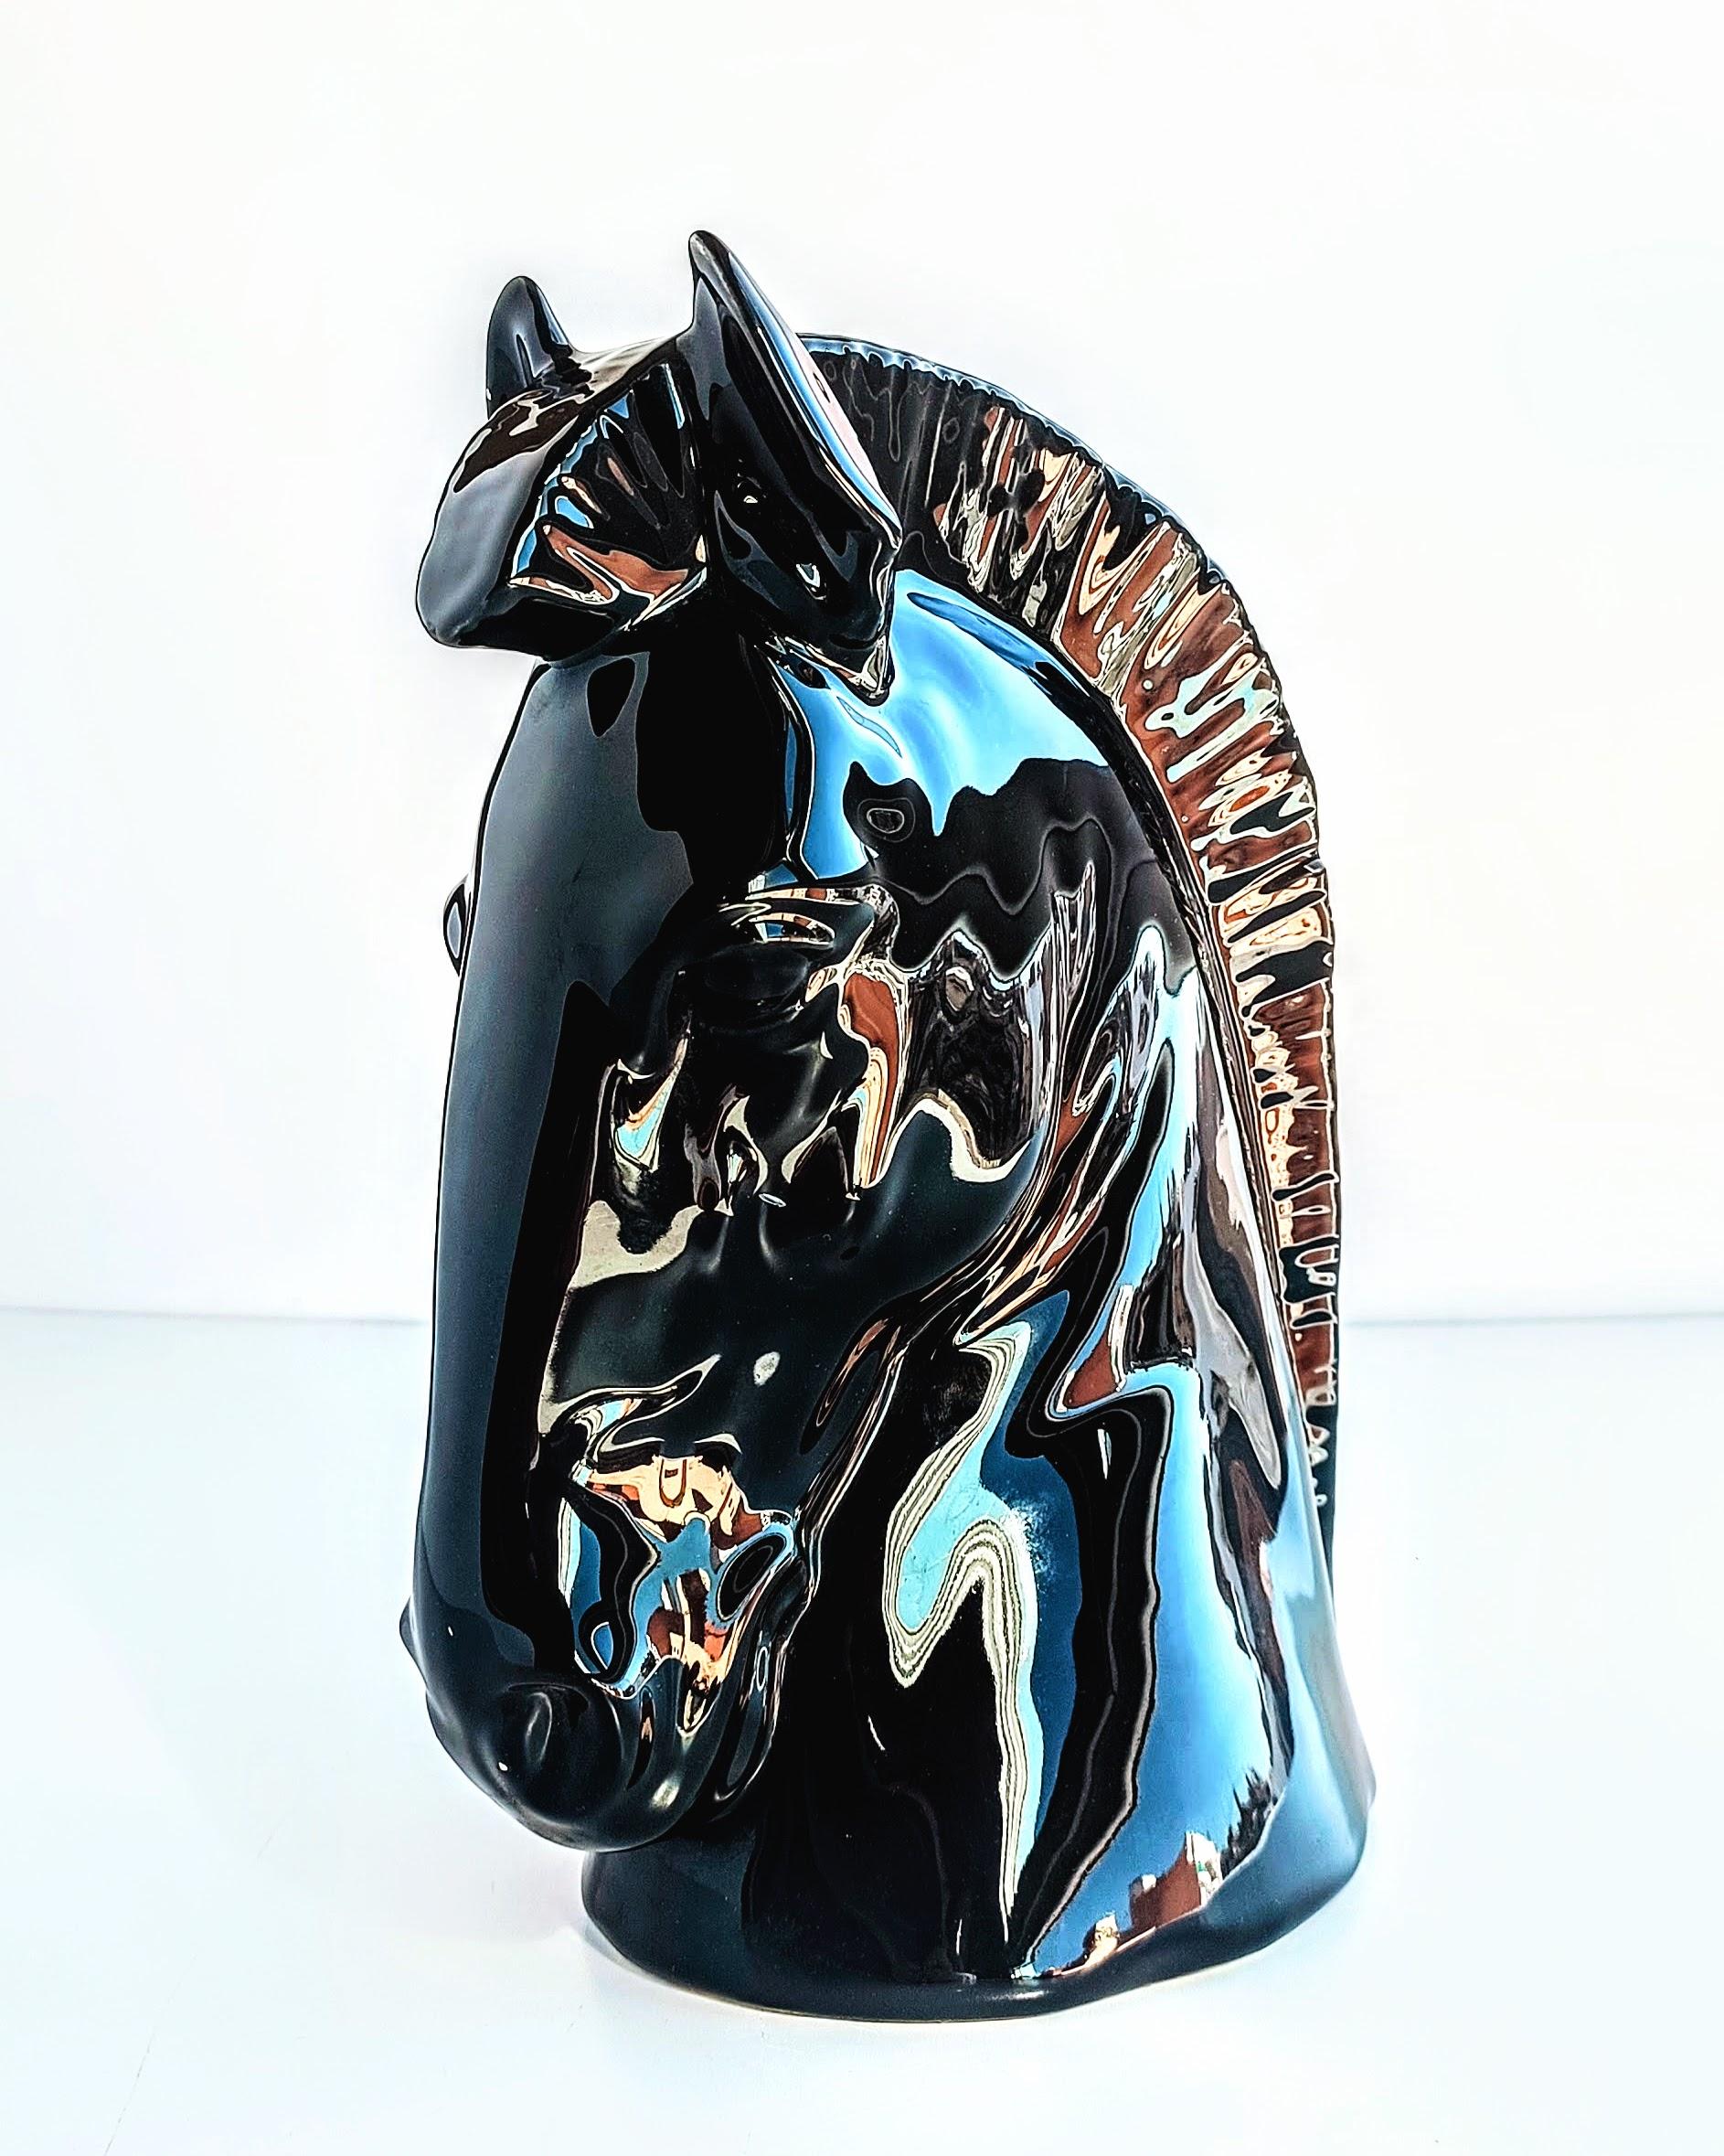 Superbe sculpture de tête de cheval en céramique émaillée noire, produite à la main dans l'atelier de Townes, dans la ville de Valence, en Espagne. 

Mesures :

Hauteur 23cm/ 9in
Largeur 17cm/ 6.7in
Poids 825gr.

Les céramiques de Manises jouissent